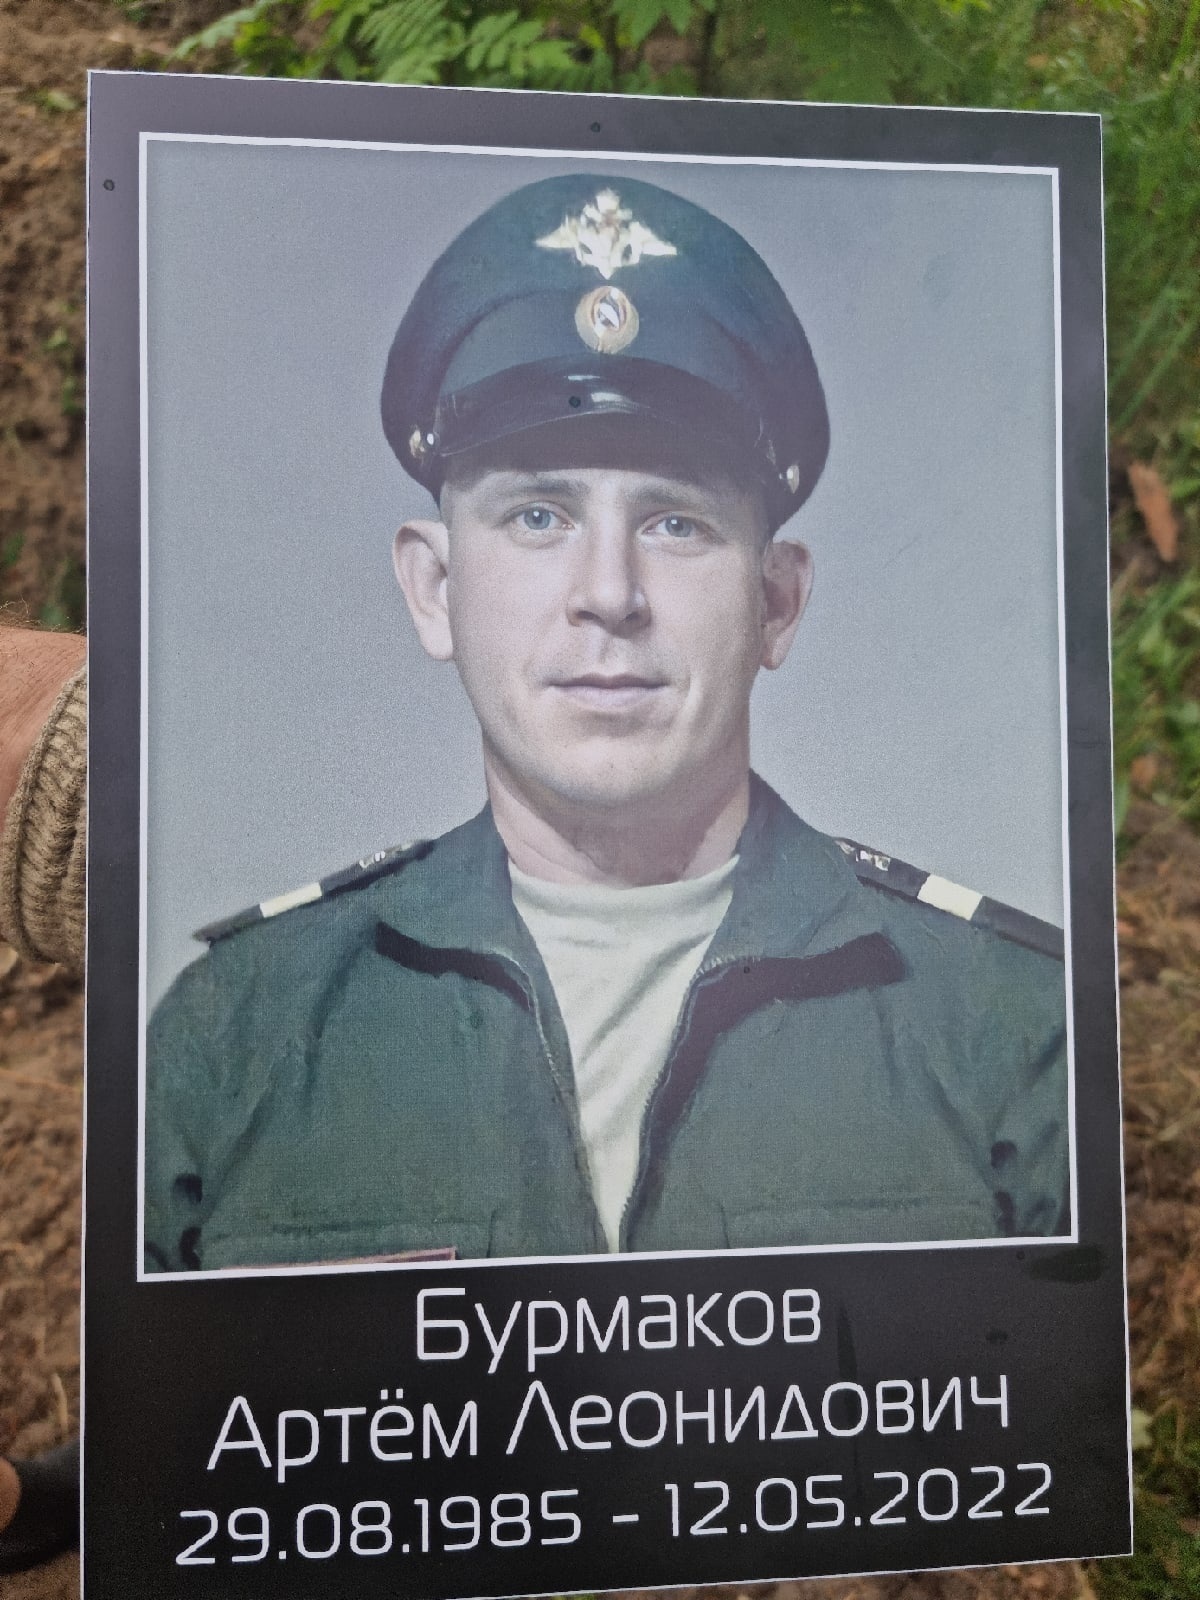 В Унече со всеми почестями в последний путь проводили сержанта Артема Бурмакова